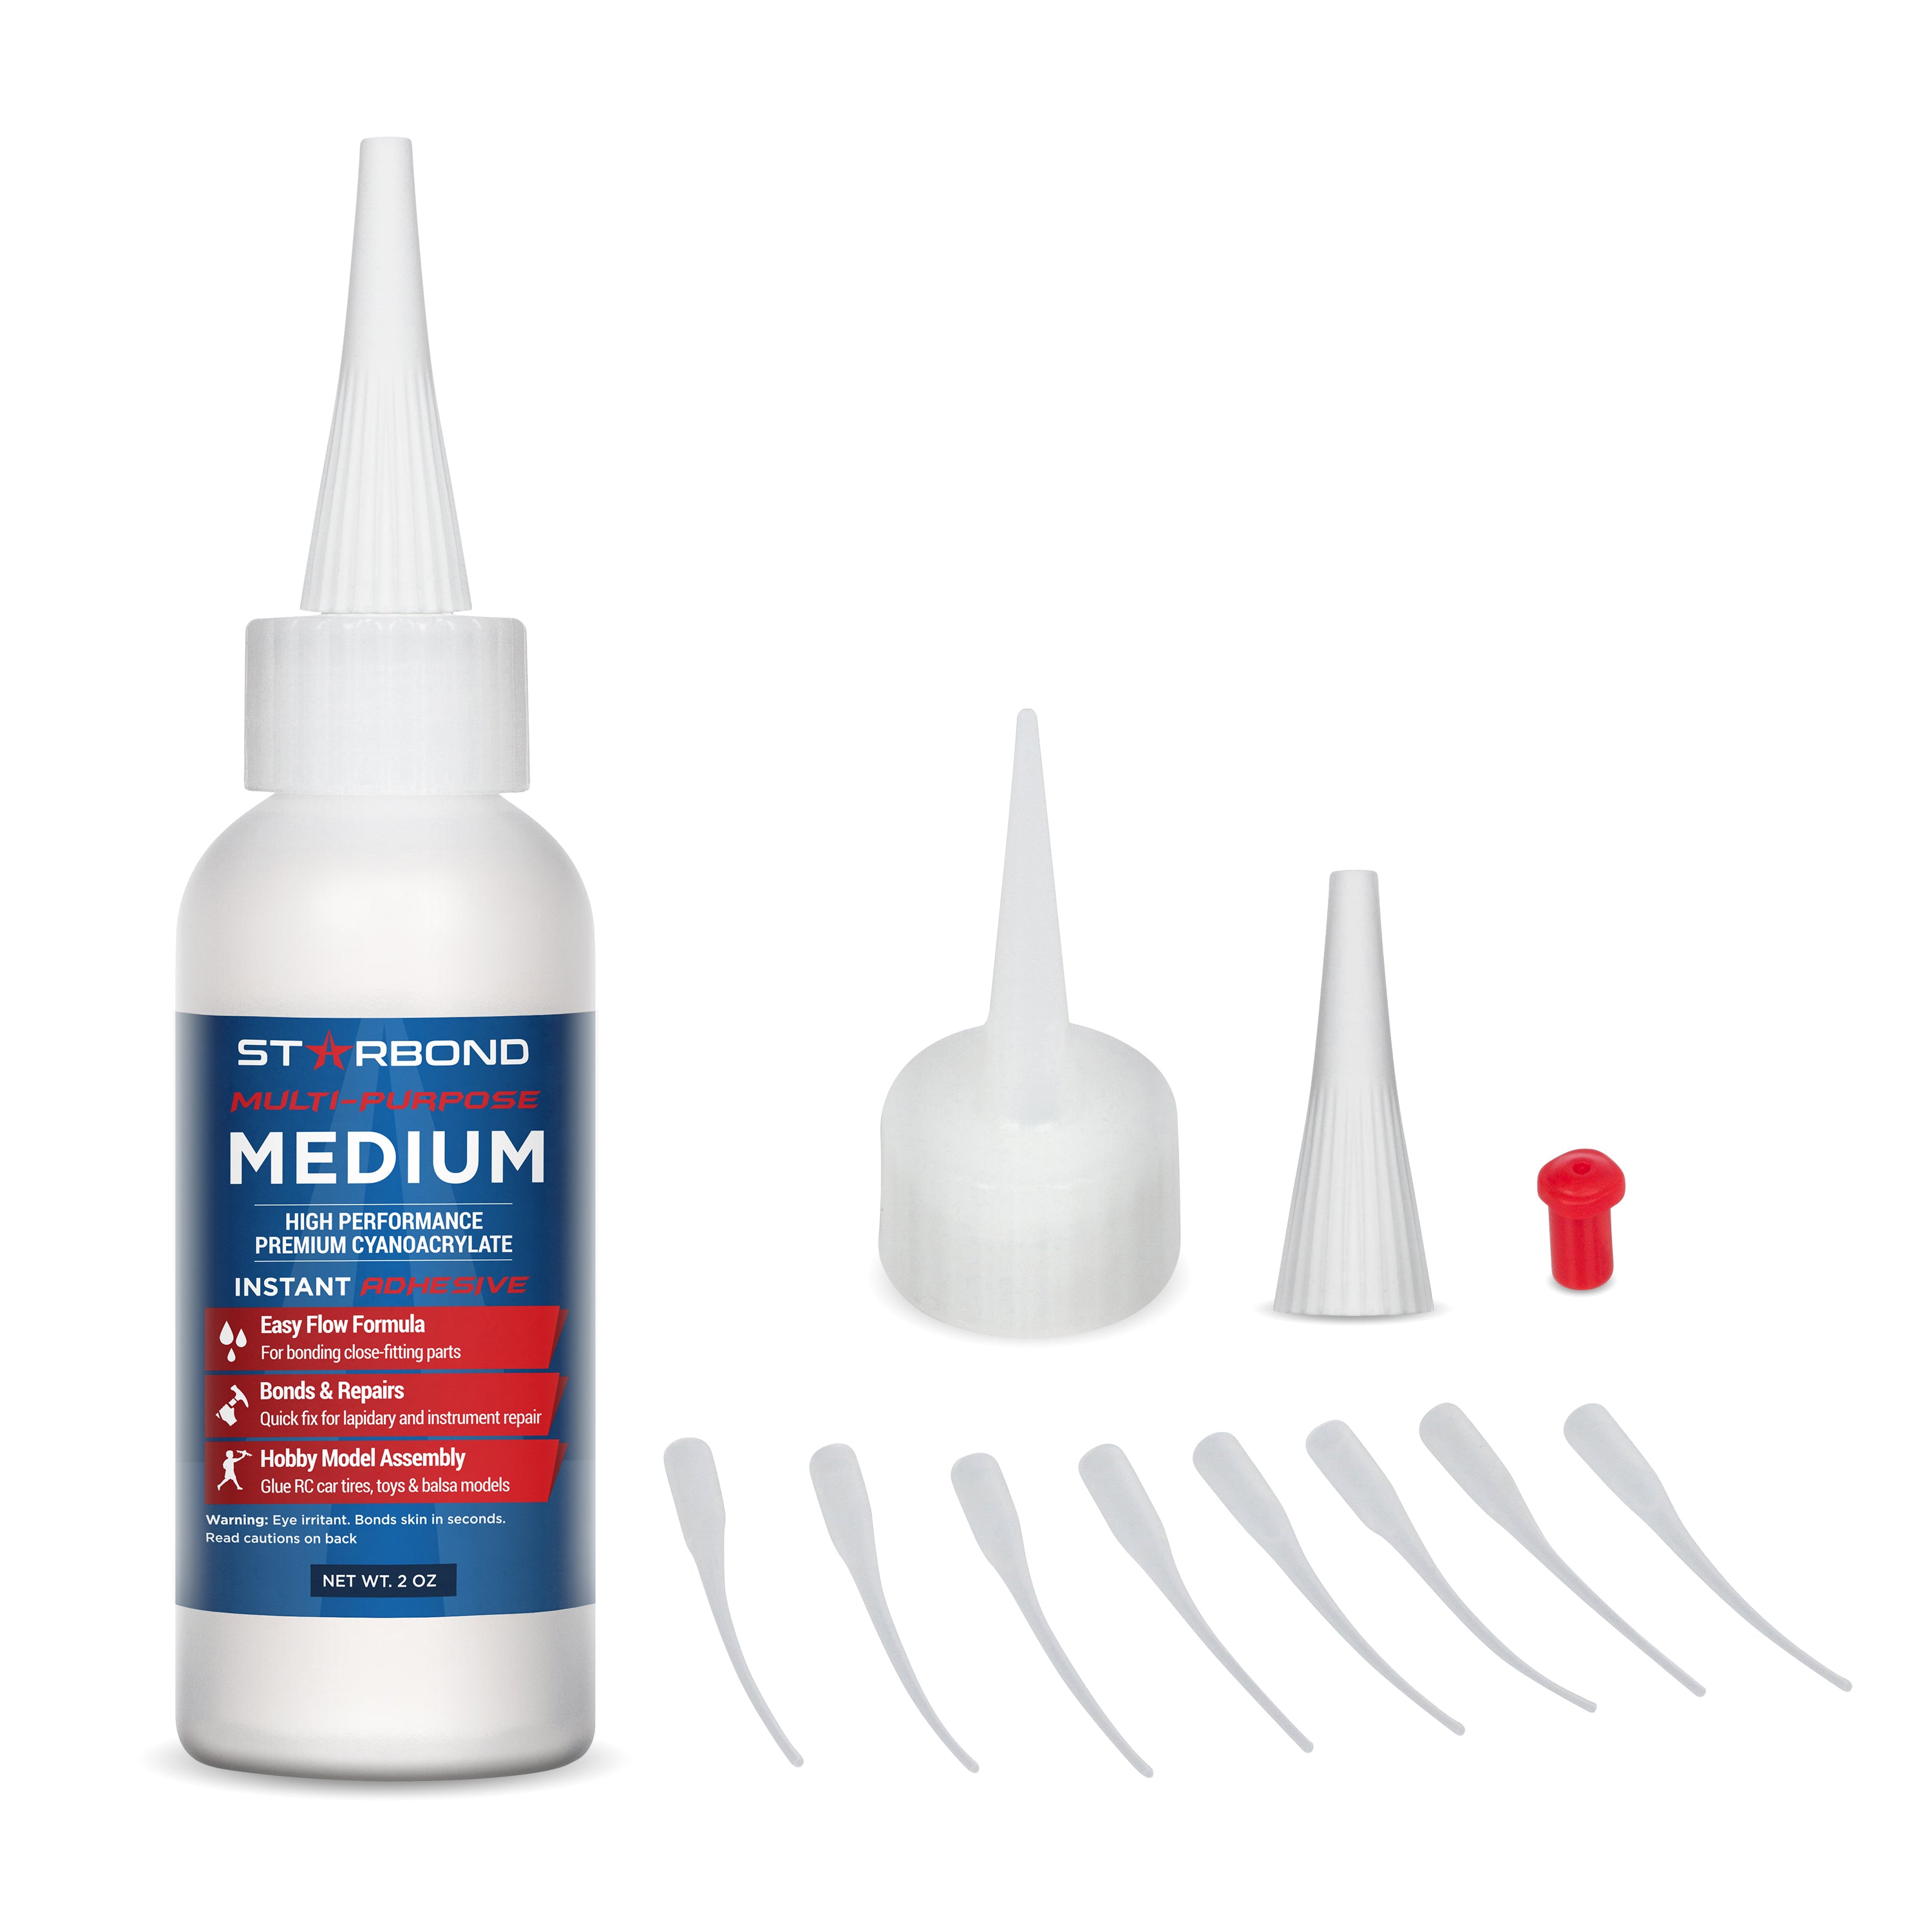 EM-150 Starbond Multi-Purpose Medium CA Glue